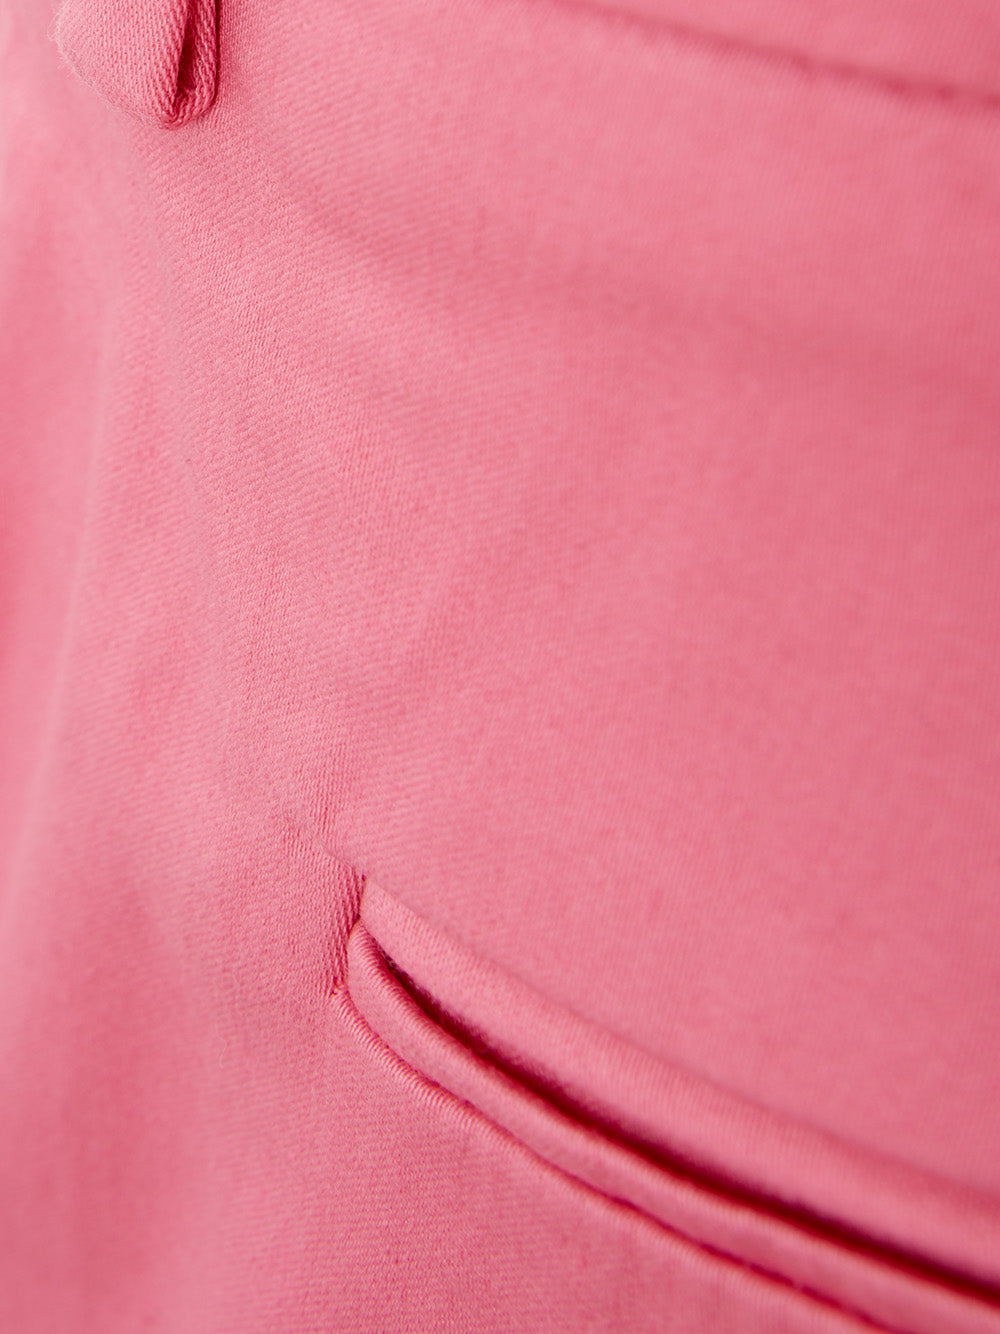 Pantalón de algodón rosa